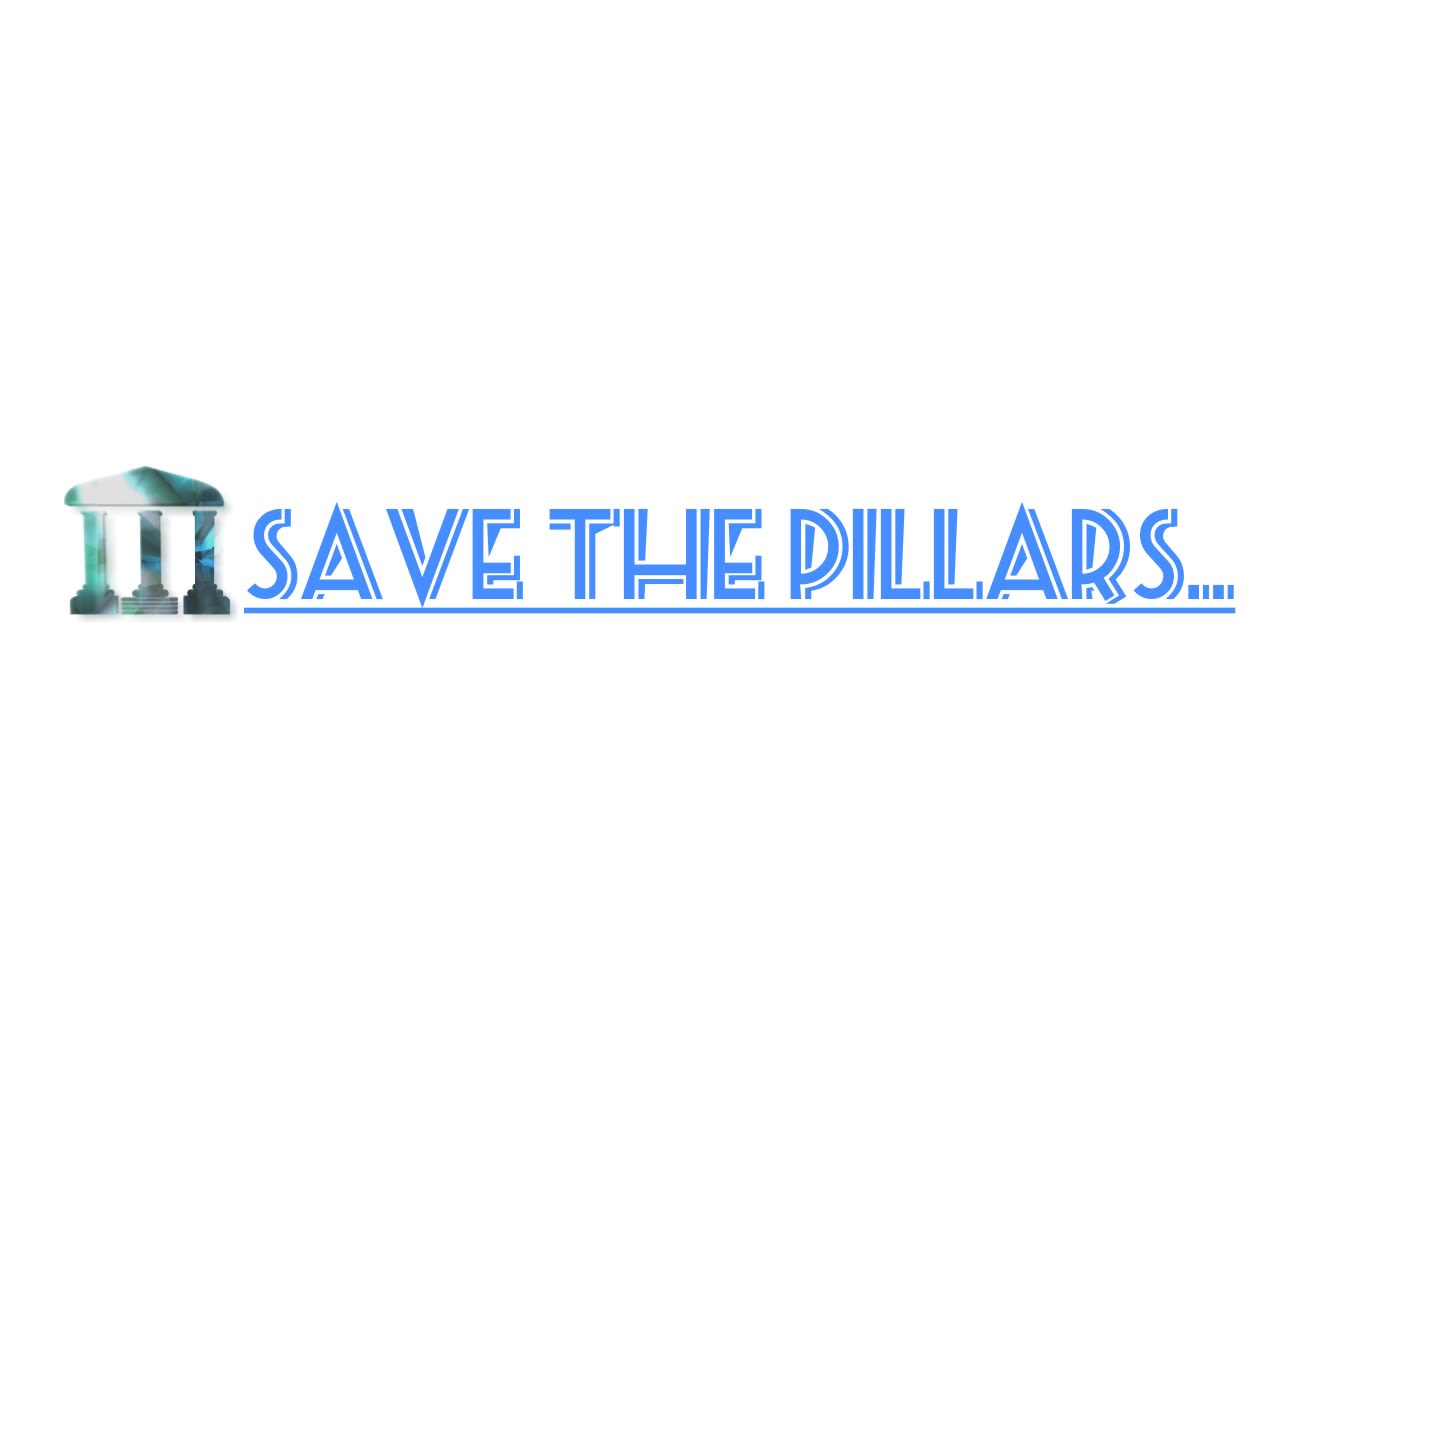 Save The Pillars